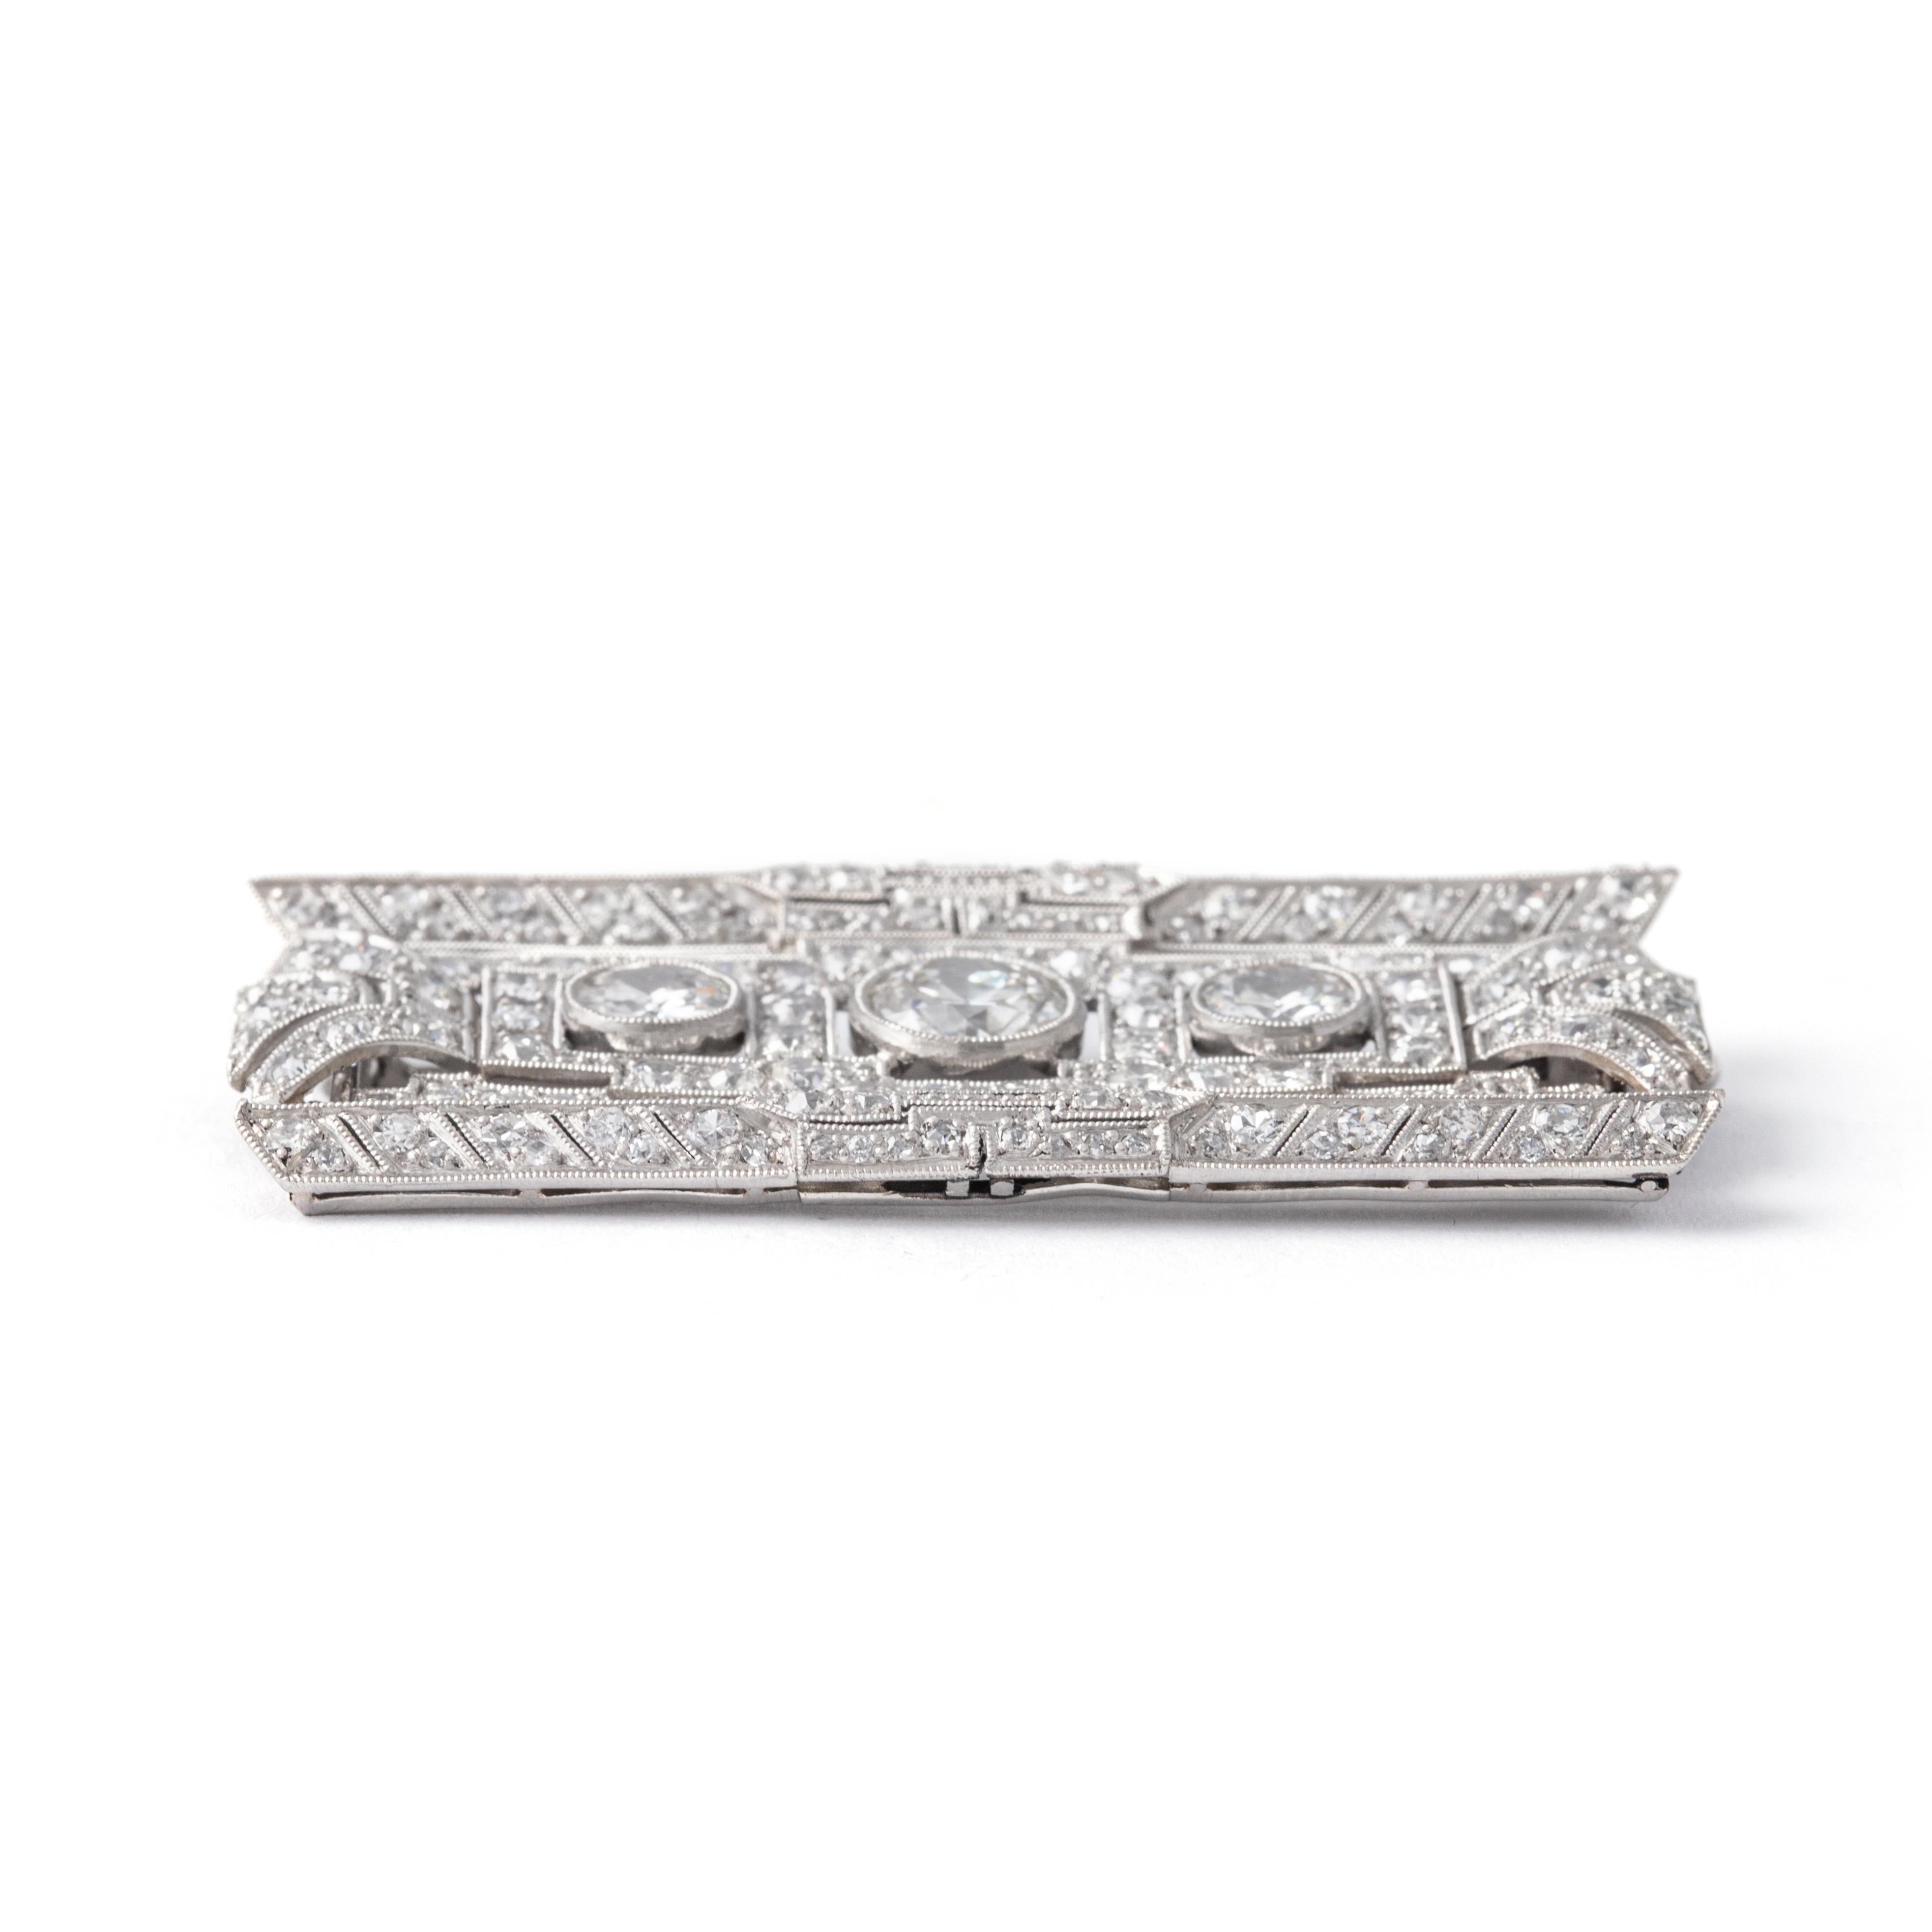 Art Deco Diamant-Brosche. Um 1930.

Gesamtlänge: ca. 4.50 Zentimeter.
Gesamtbreite: ca. 2,30 Zentimeter.

Gesamtgewicht: 13,81 Gramm.
